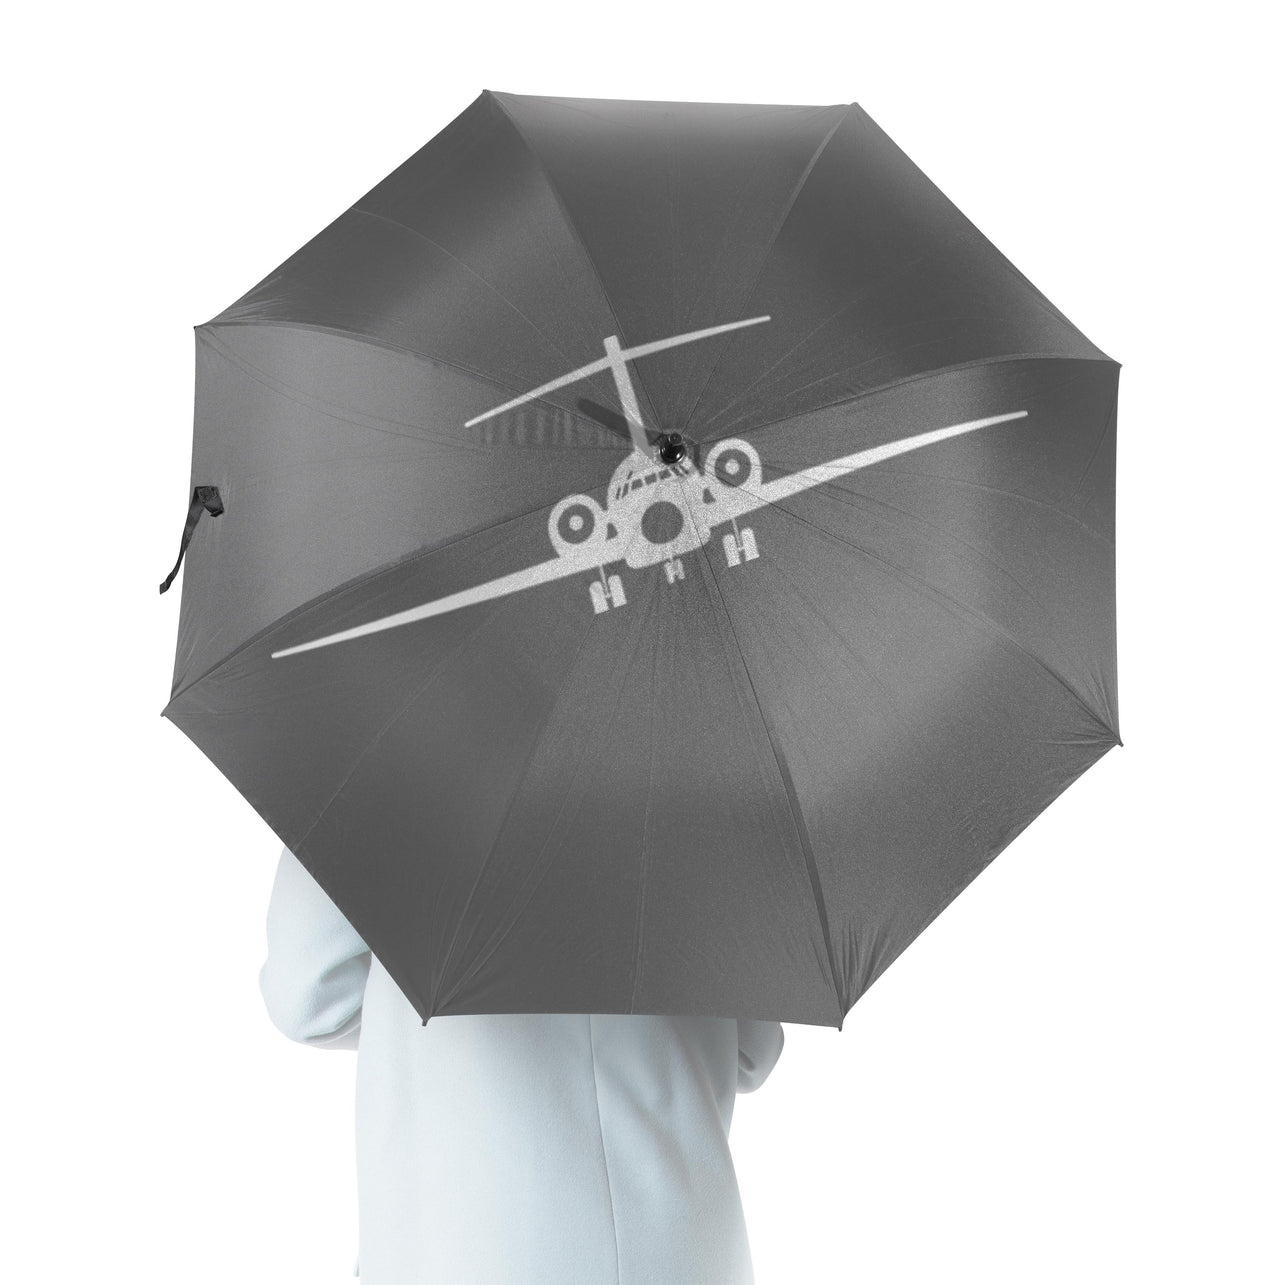 Boeing 717 Silhouette Designed Umbrella